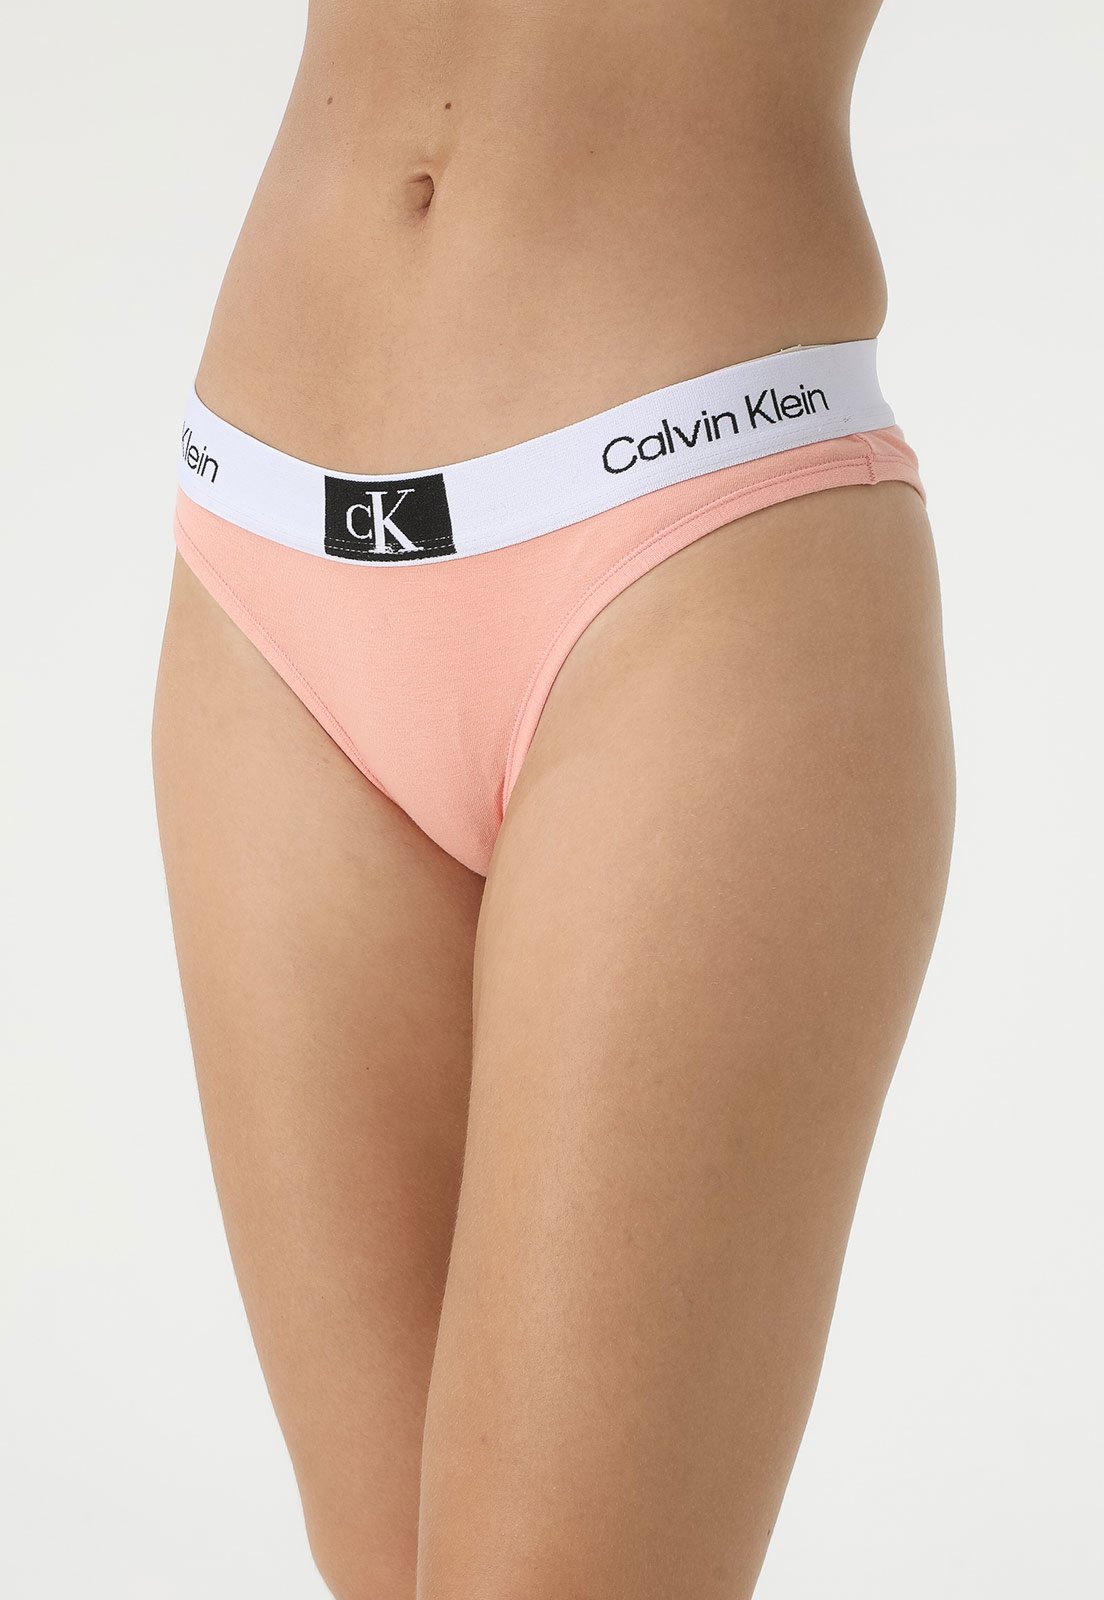 Calcinha Calvin Klein Underwear Tanga Ck 1996 Coral - Faz a Boa!